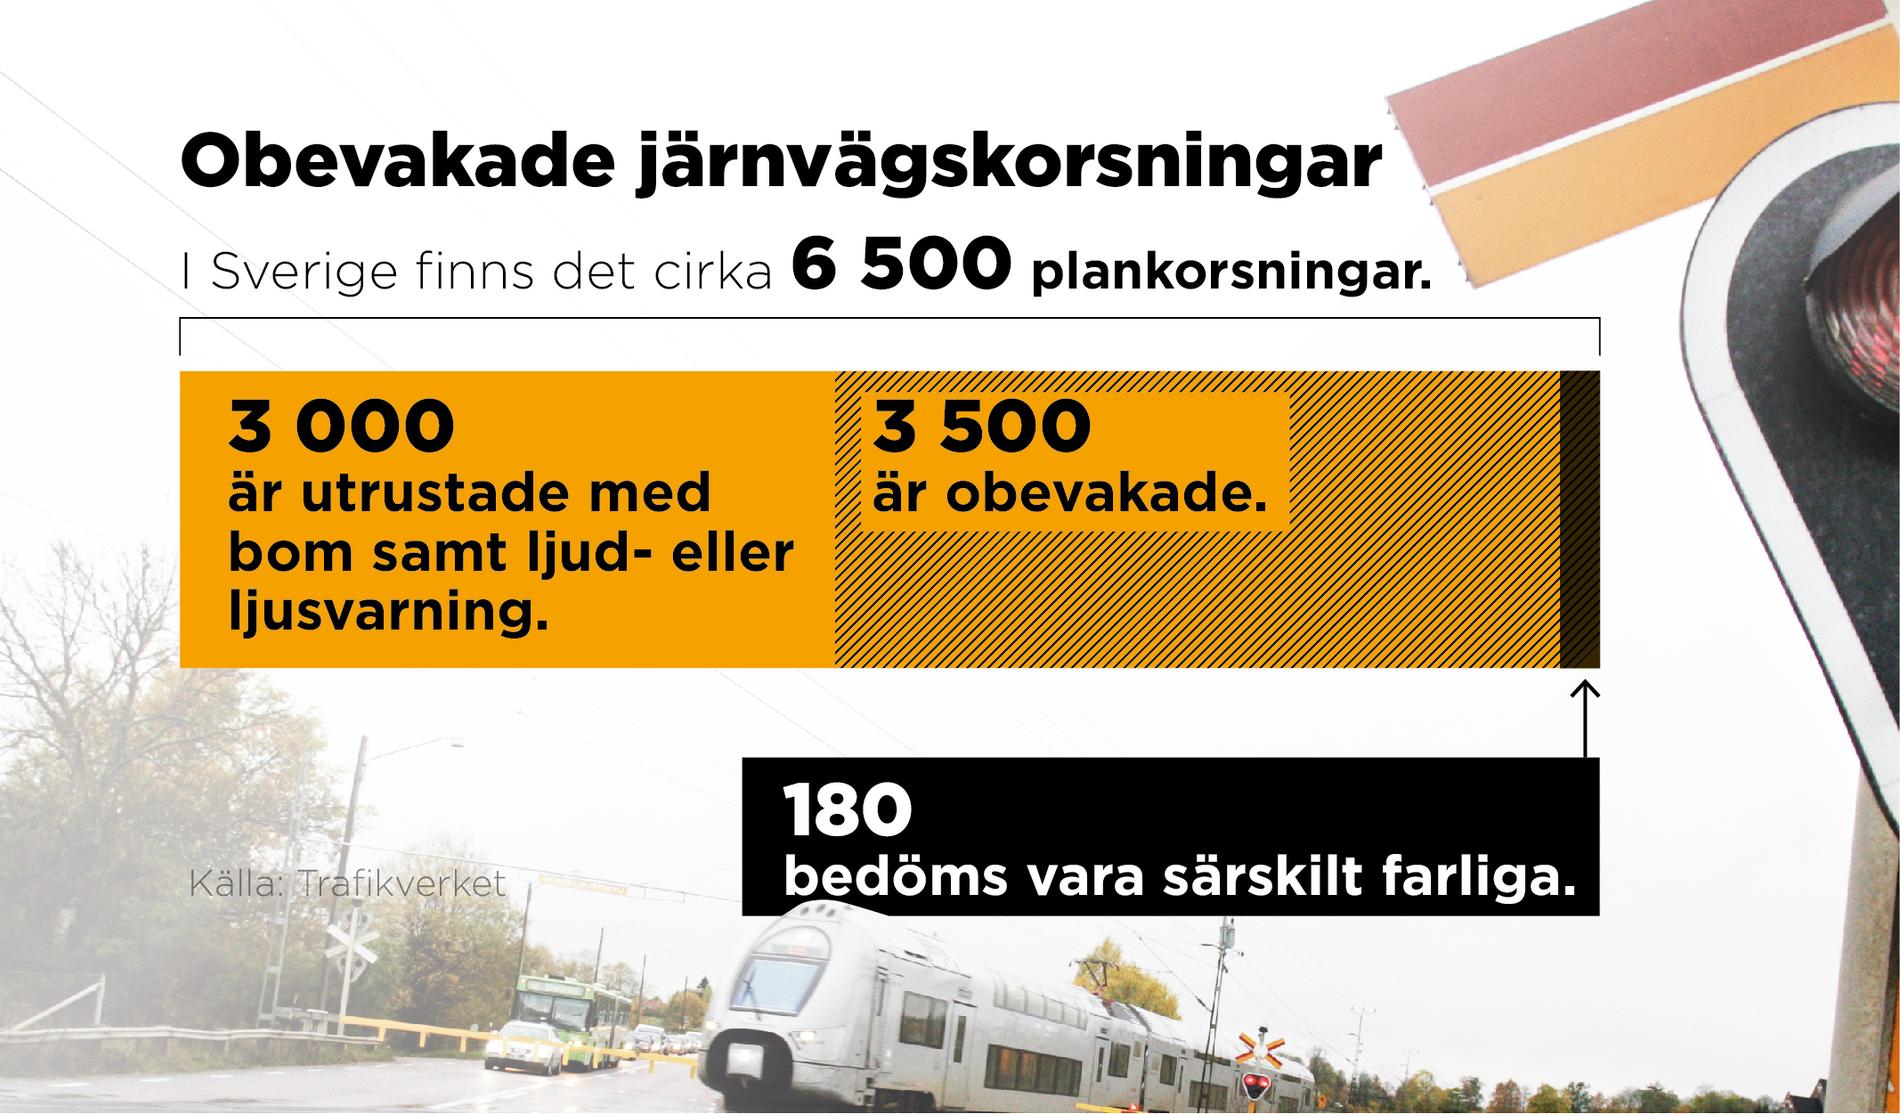 Tusentals järnvägskorsningar är obevakade i Sverige.